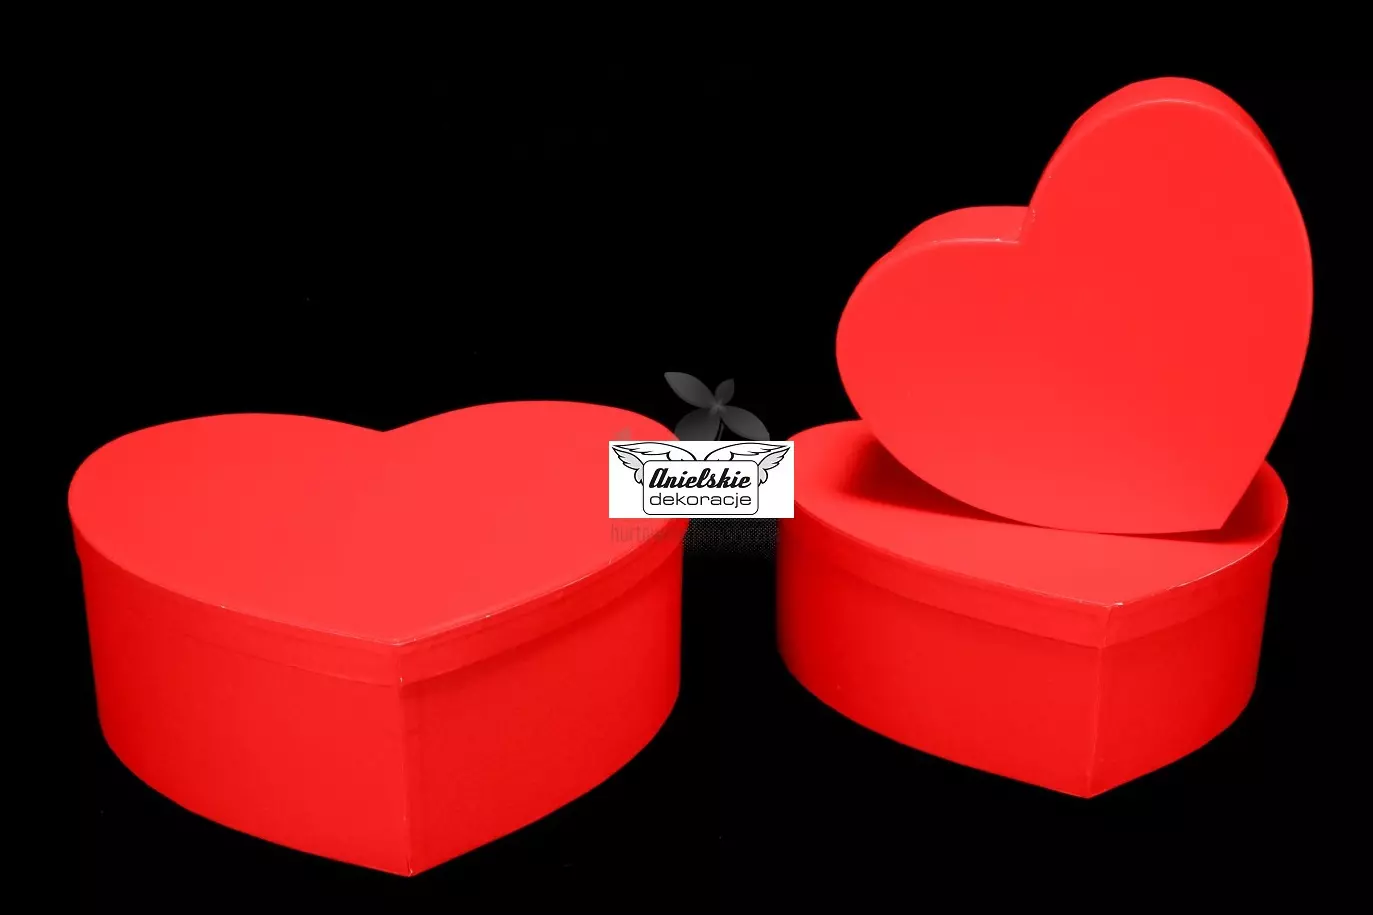 Pudełko na kwiaty w kształcie serca typu flowerbox, komplet 3 sztuki.